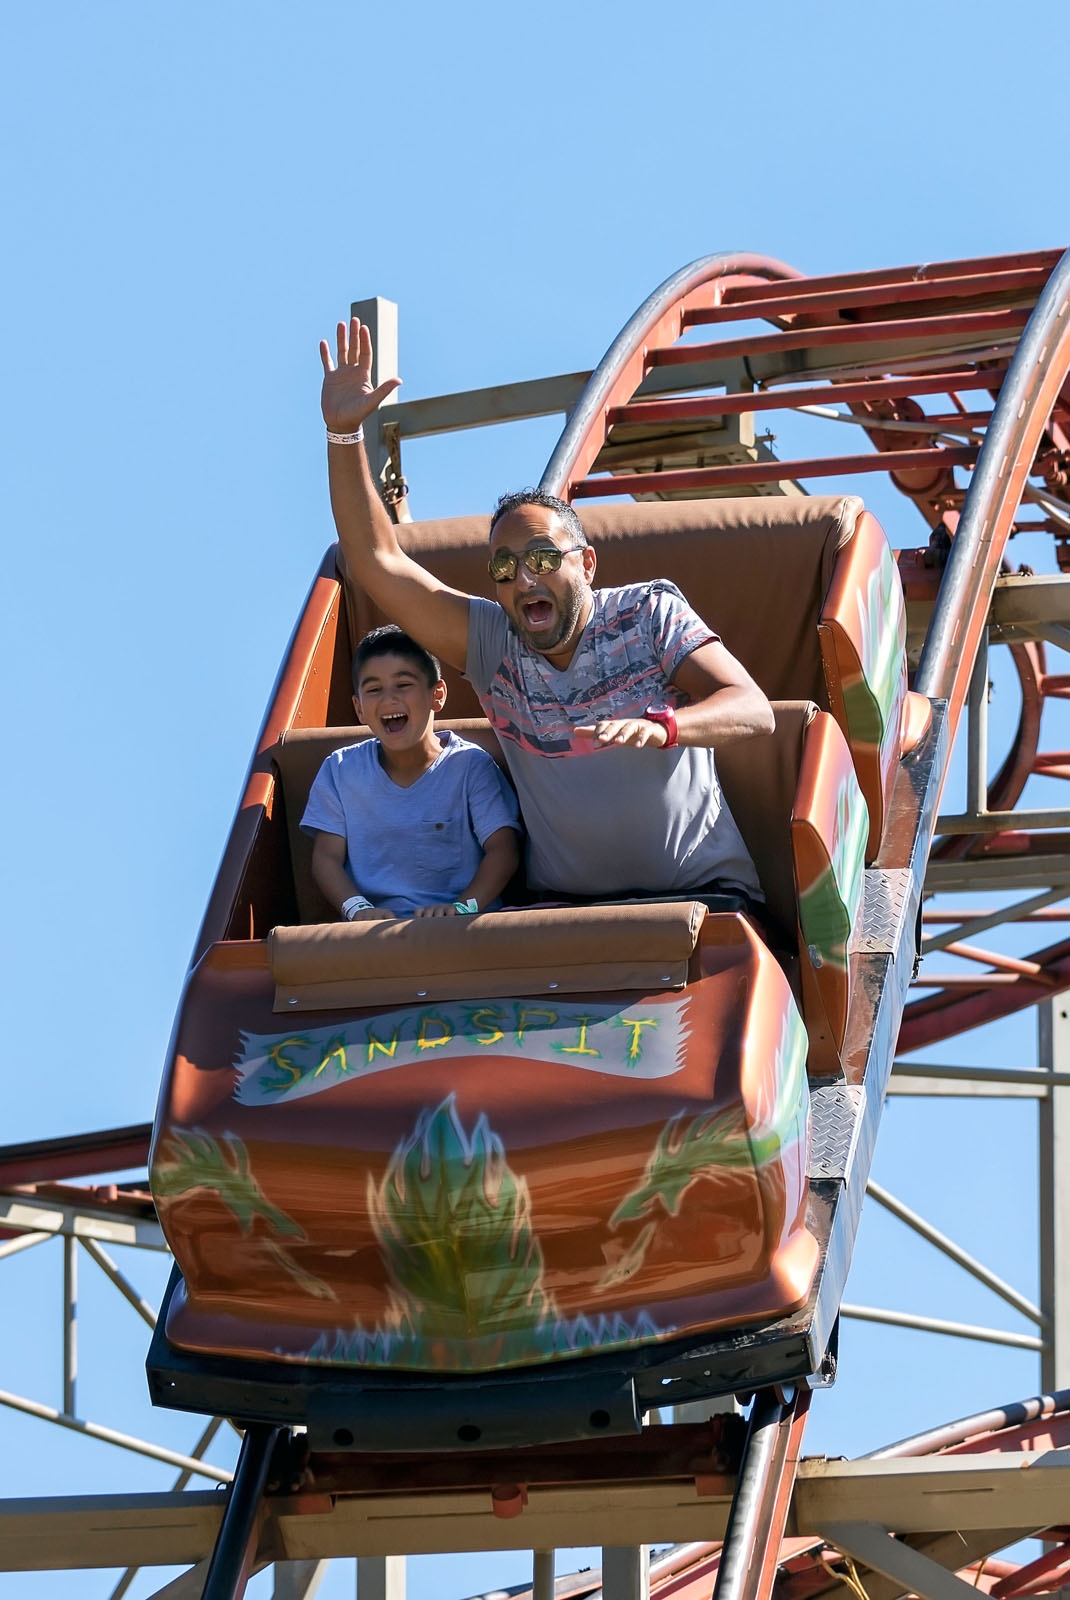 Adult male and child enjoy roller coaster at Sandspit Amusement Park